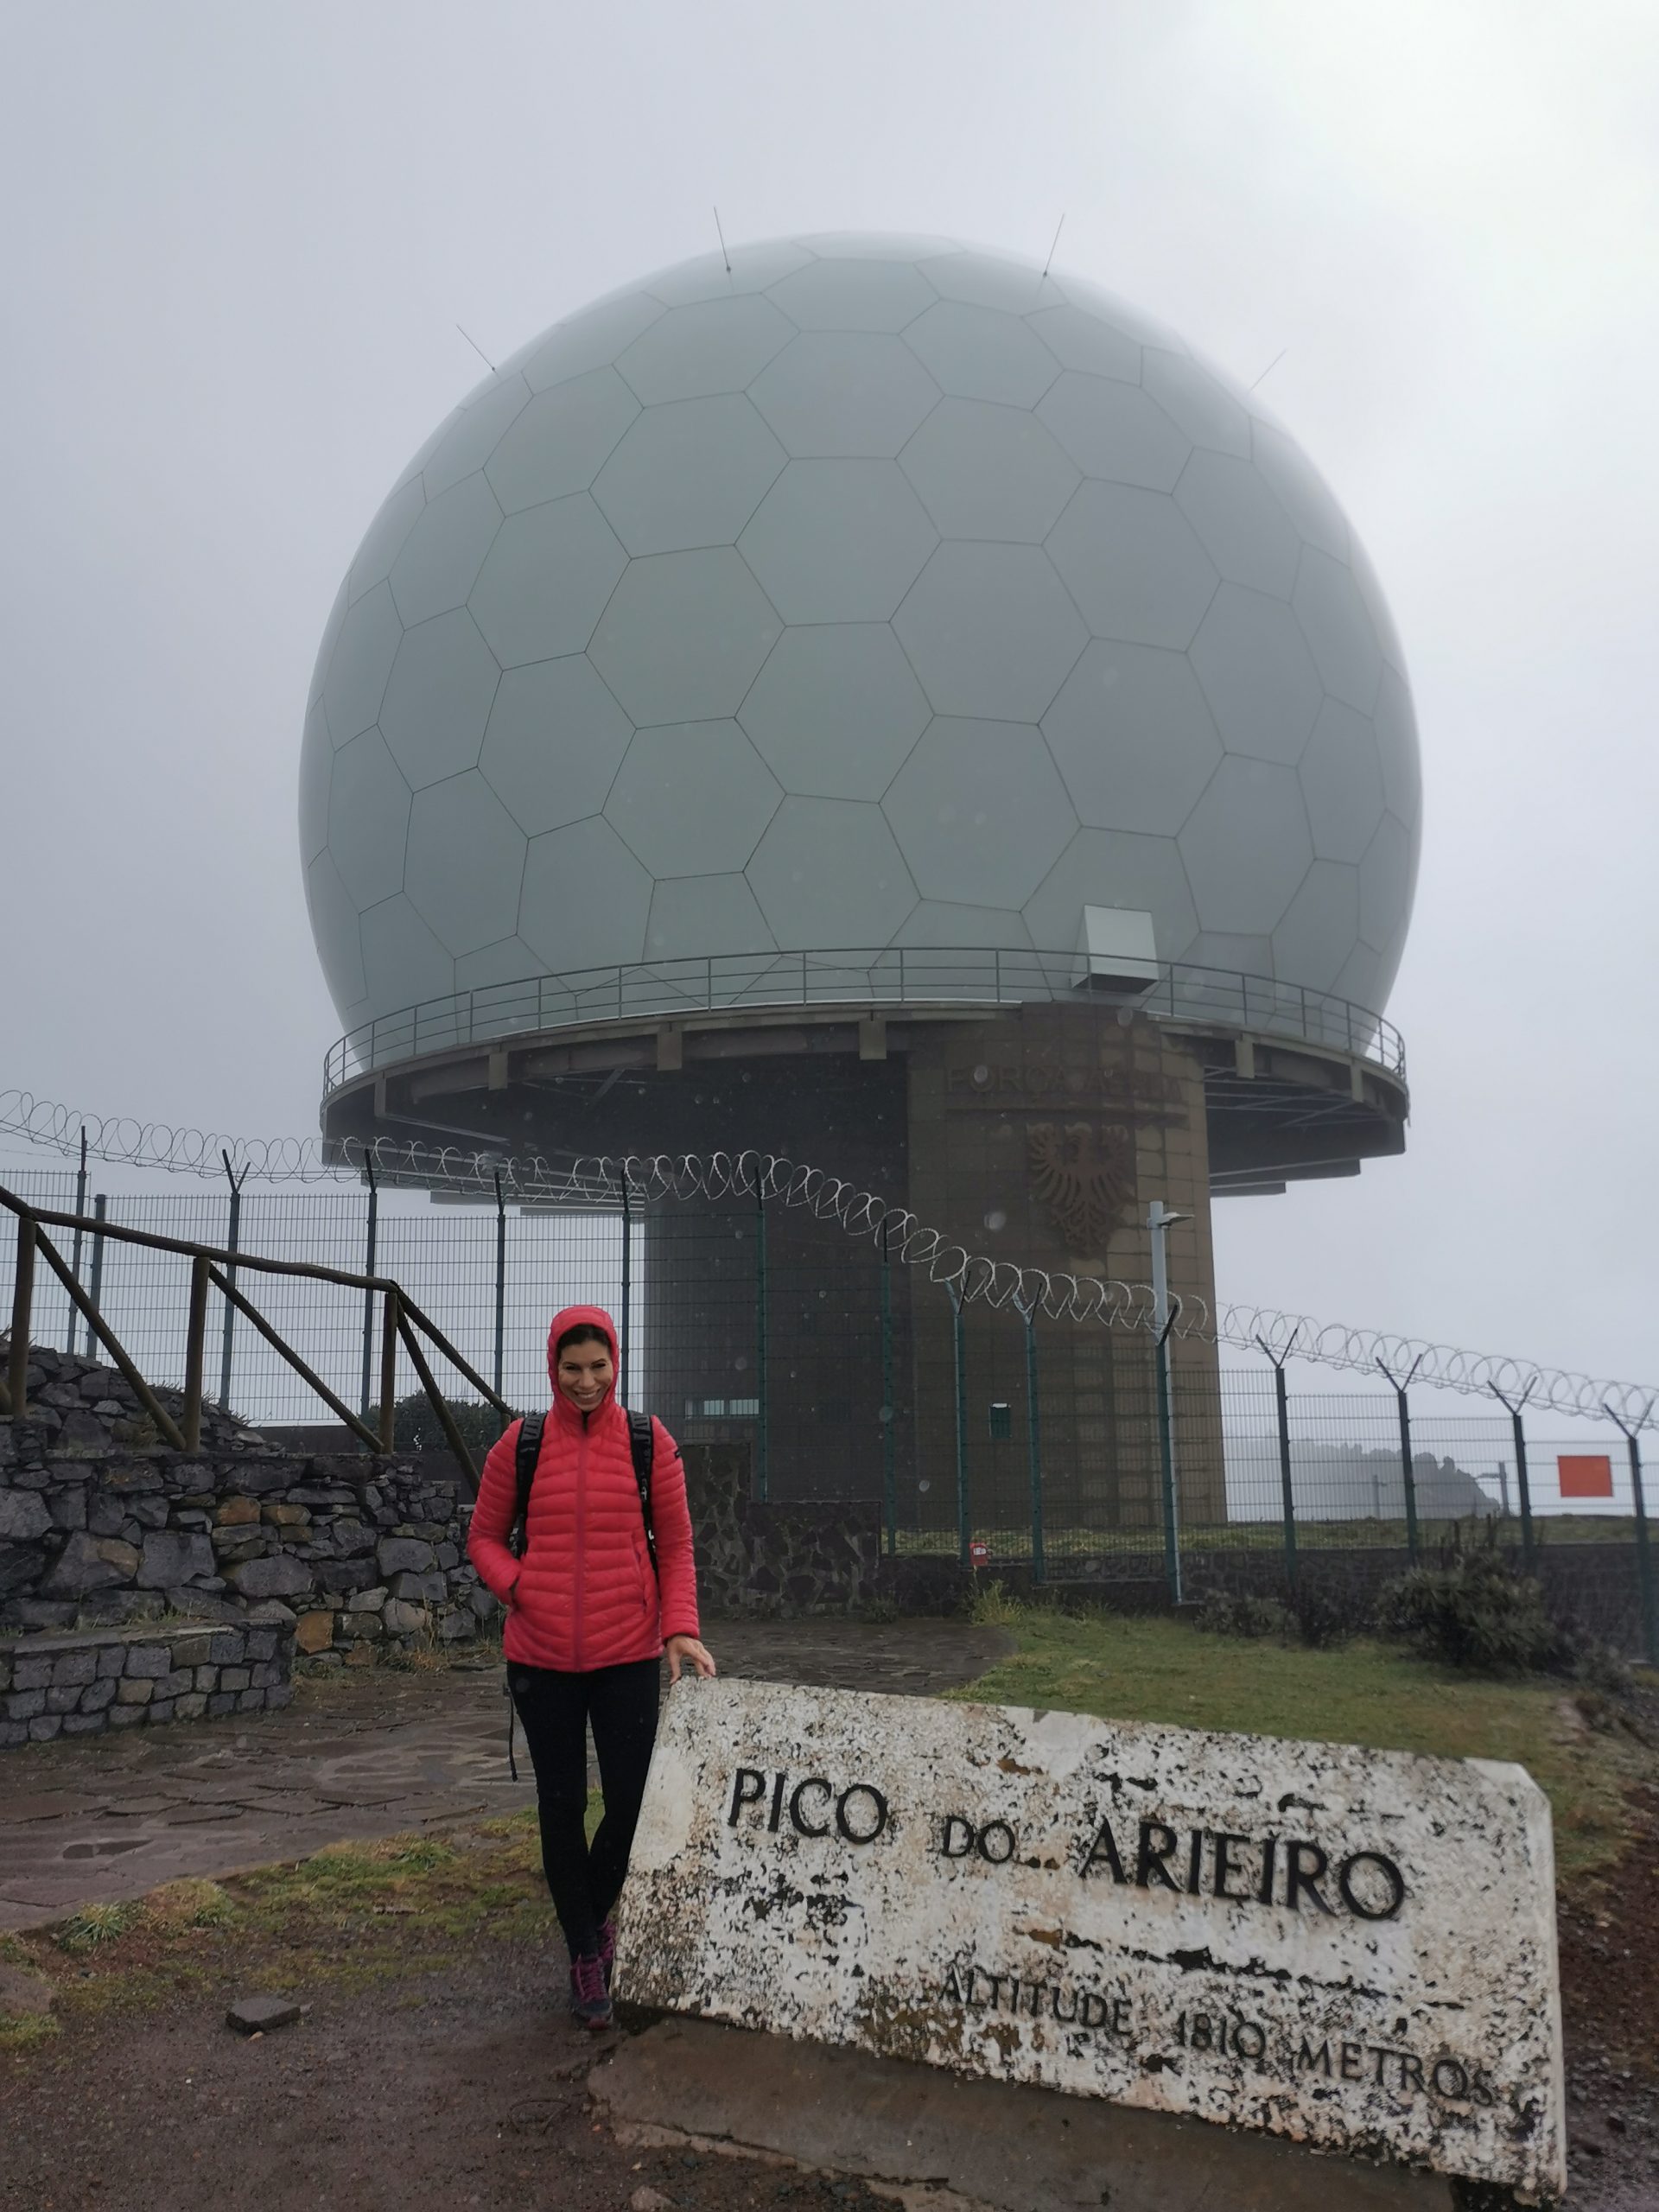 Pico do Ariero madeira traveladdict